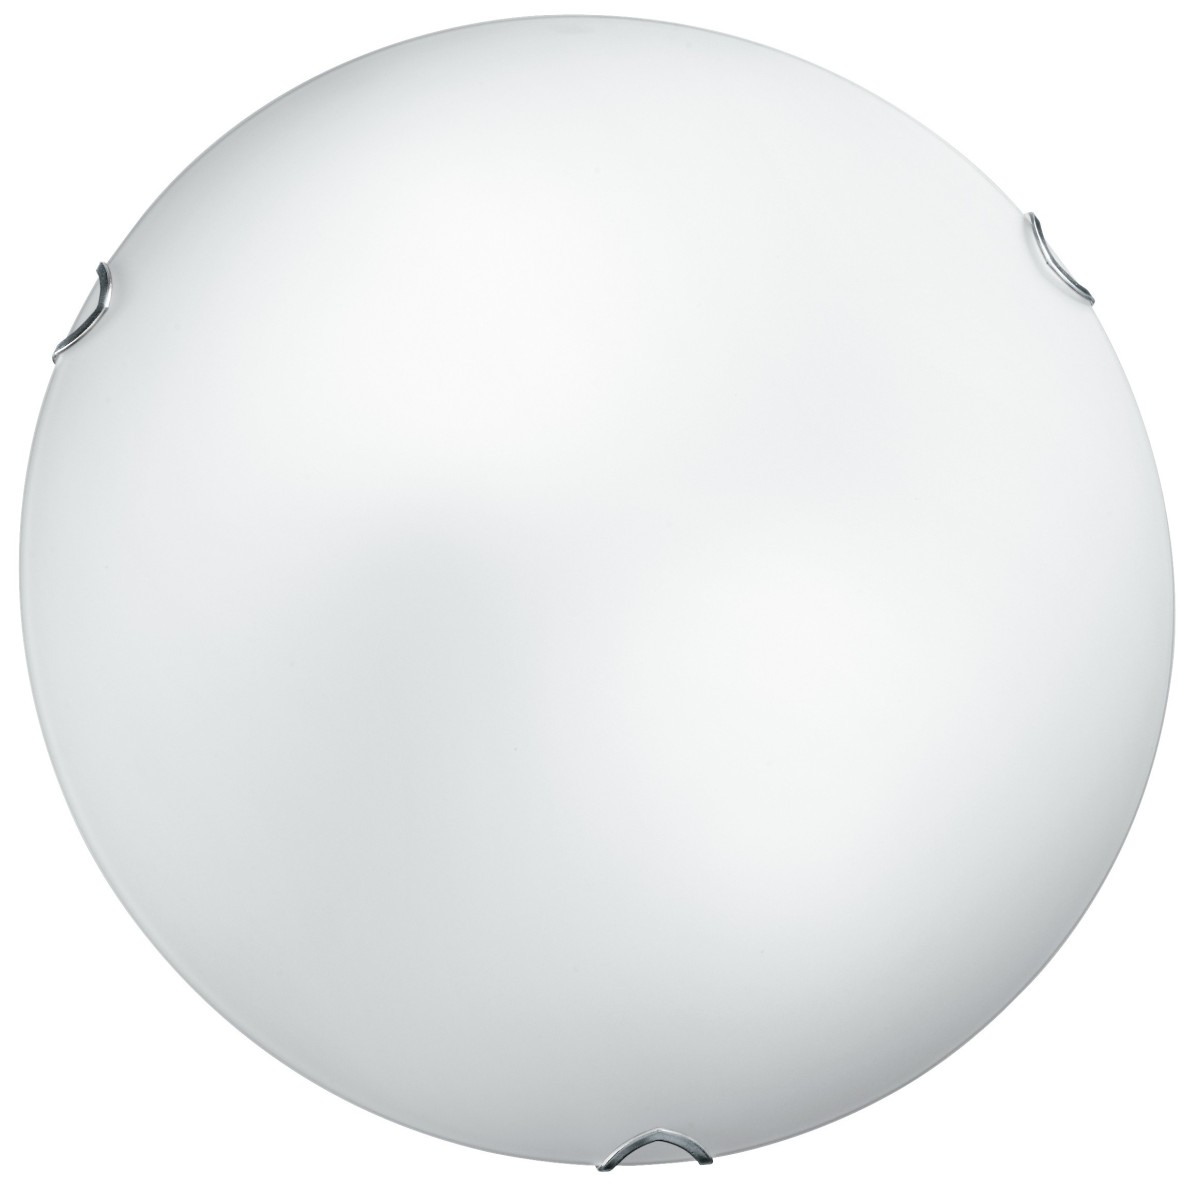 I-OBLO / PL30 - Plafonnier rond blanc en verre satiné plafonnier classique E27